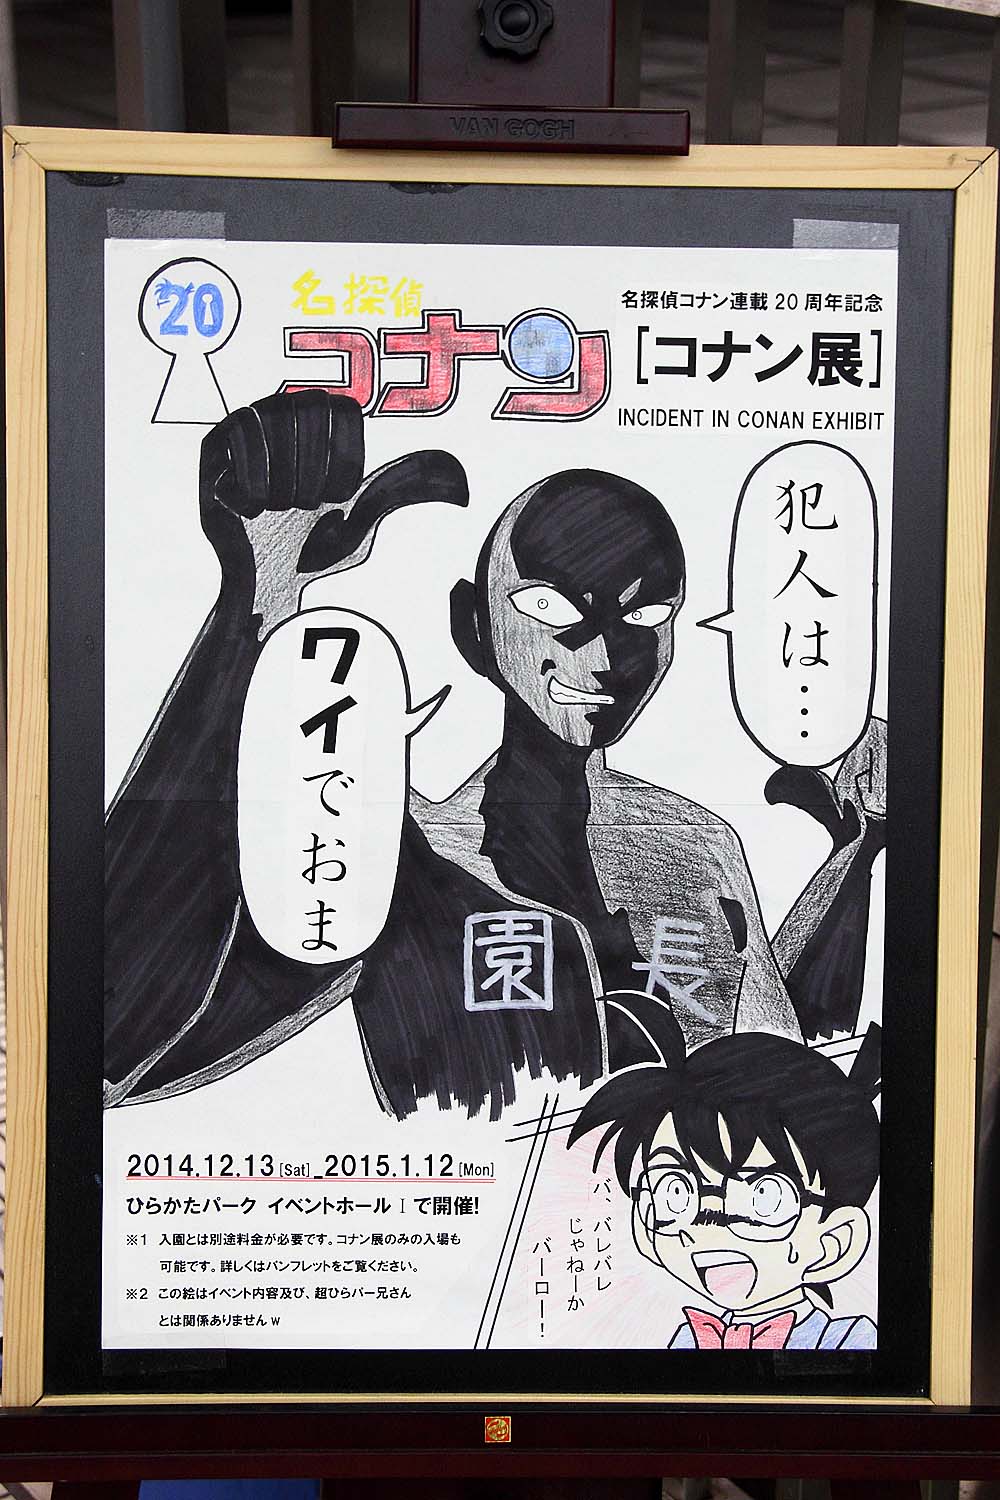 服部 大阪ひらかたパークで開催された コナン展 のポスターが面白すぎます 笑